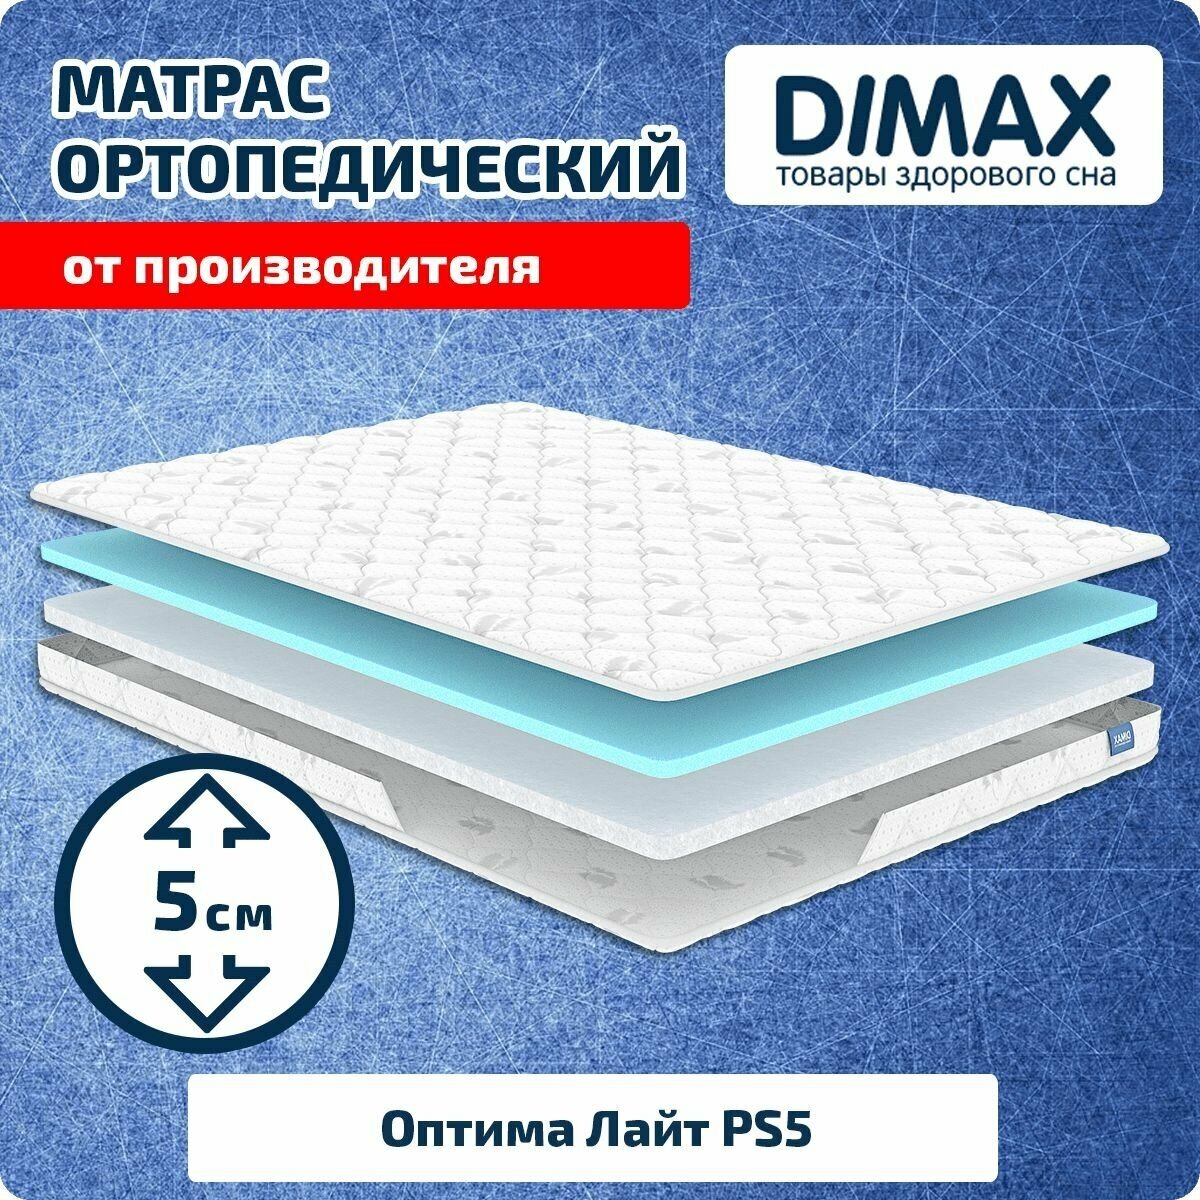 Матрас Dimax Оптима Лайт PS5 80x190